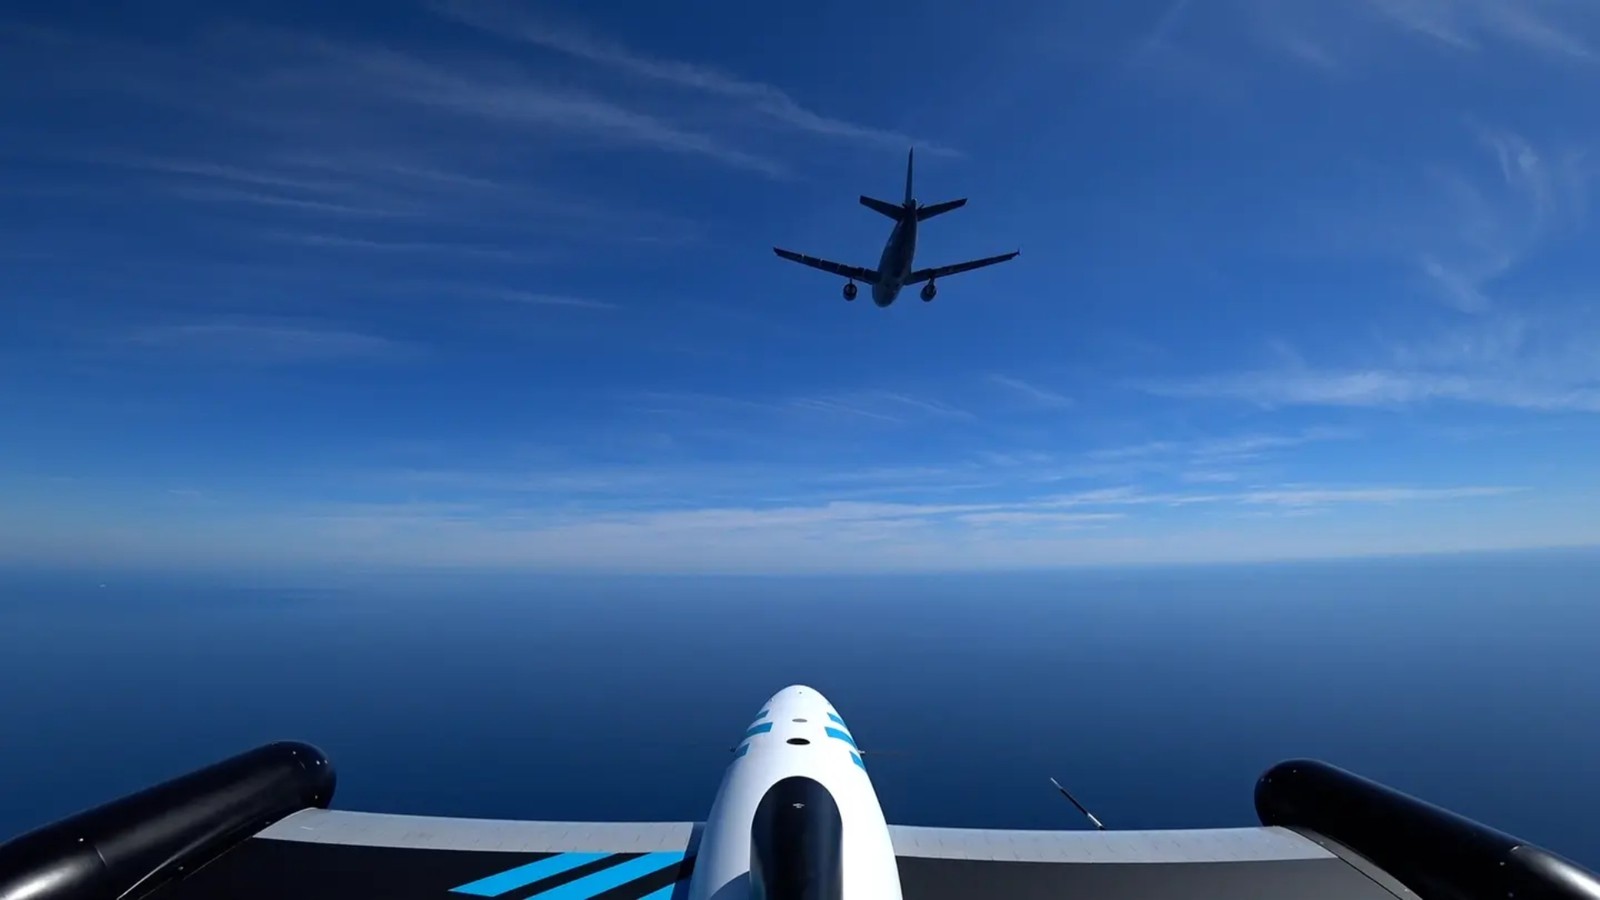 Kolosalny samolot Airbusa przejął kontrolę nad dronami. Tak wytycza się nowe szlaki dla wojska